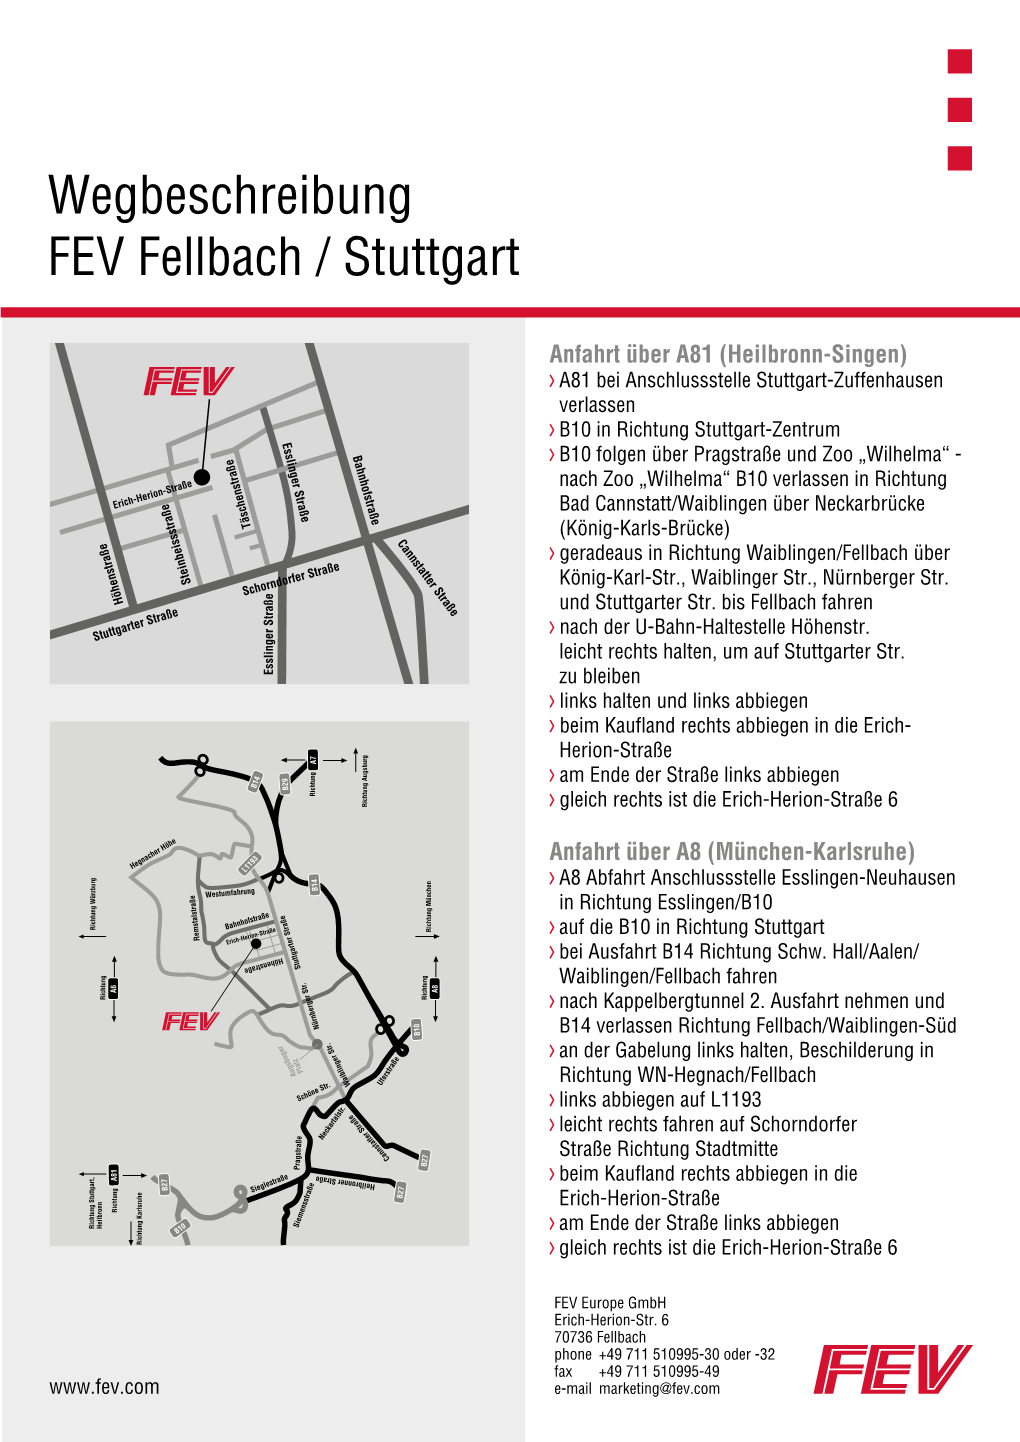 Wegbeschreibung FEV Fellbach / Stuttgart